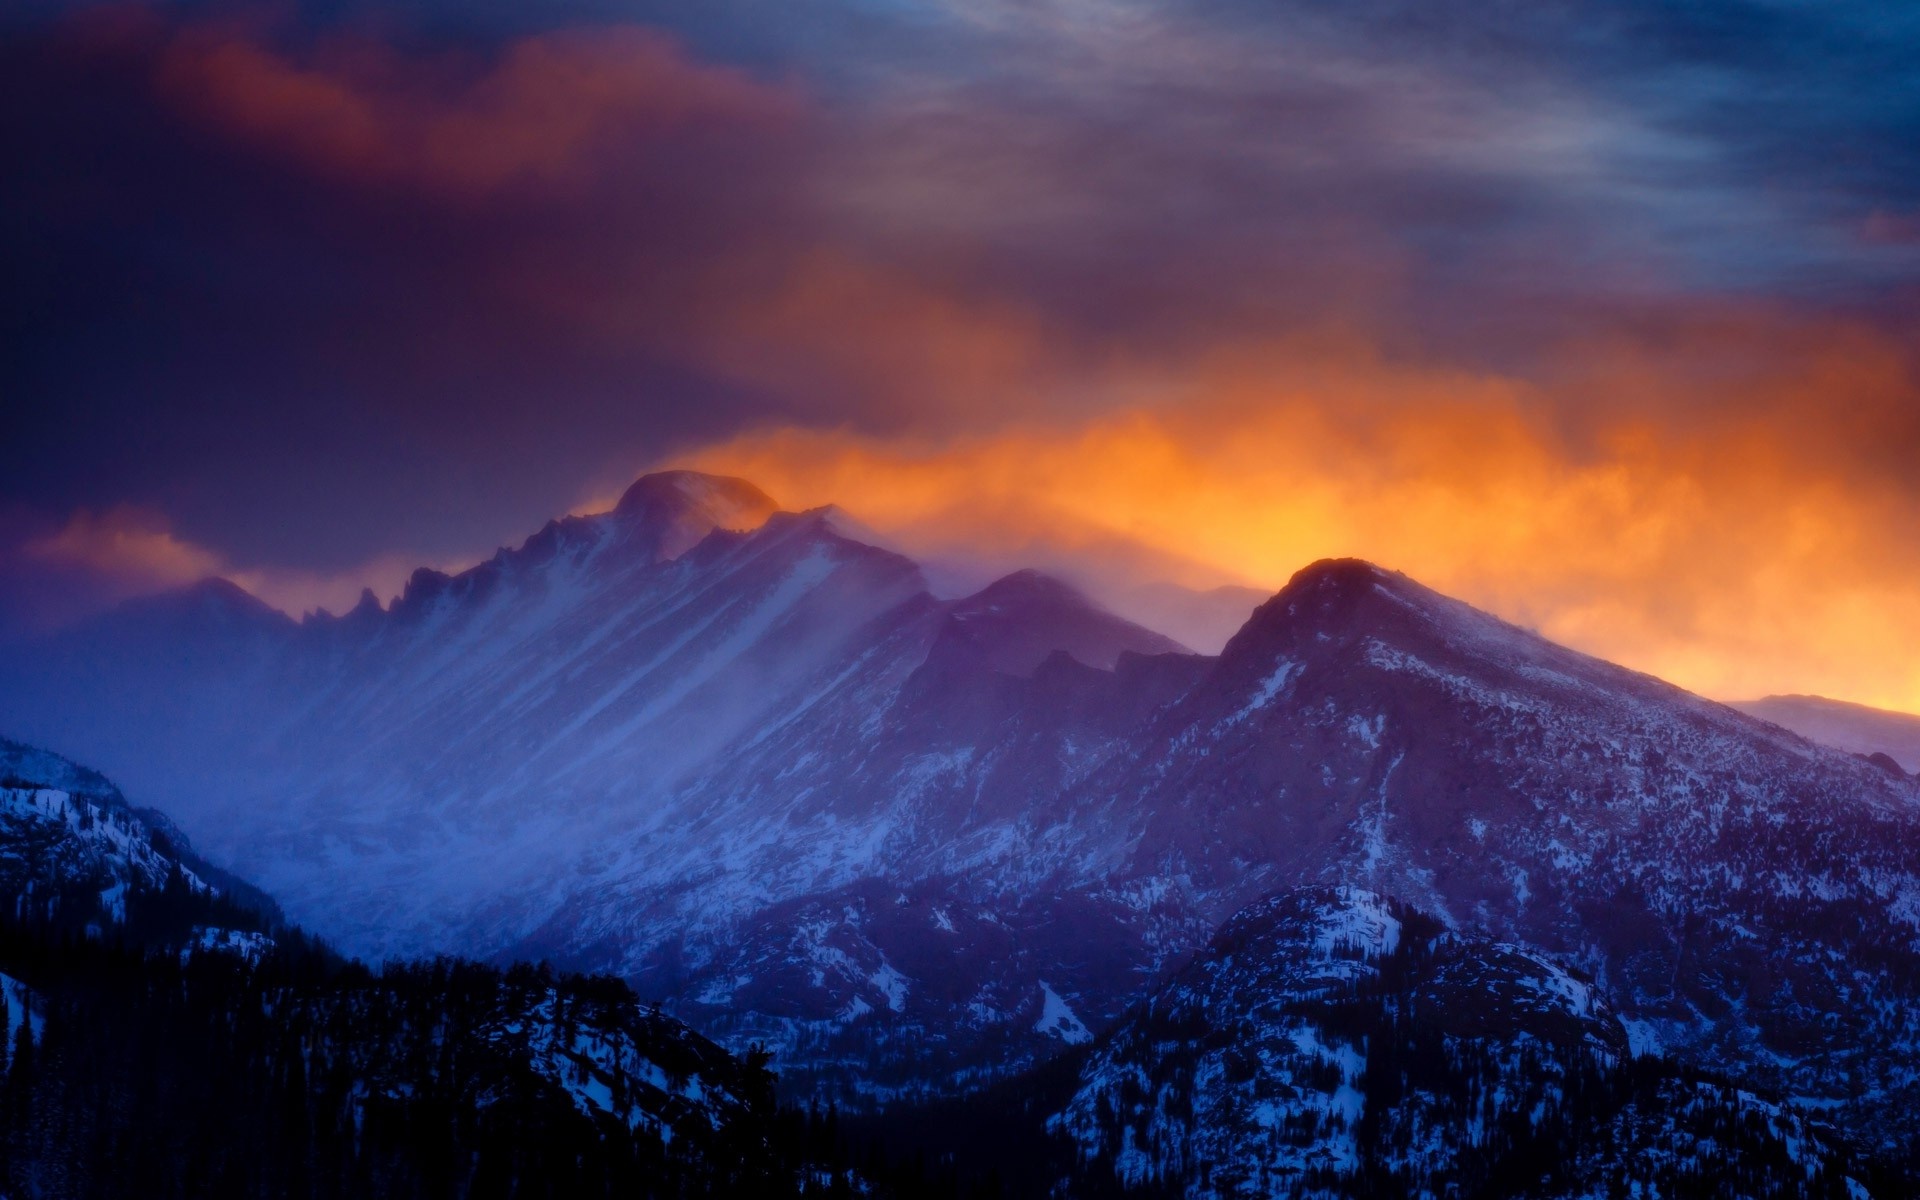 Rocky Mountain National Park sunlight, Winter scenery, Snowy peaks, Tranquil atmosphere, 1920x1200 HD Desktop